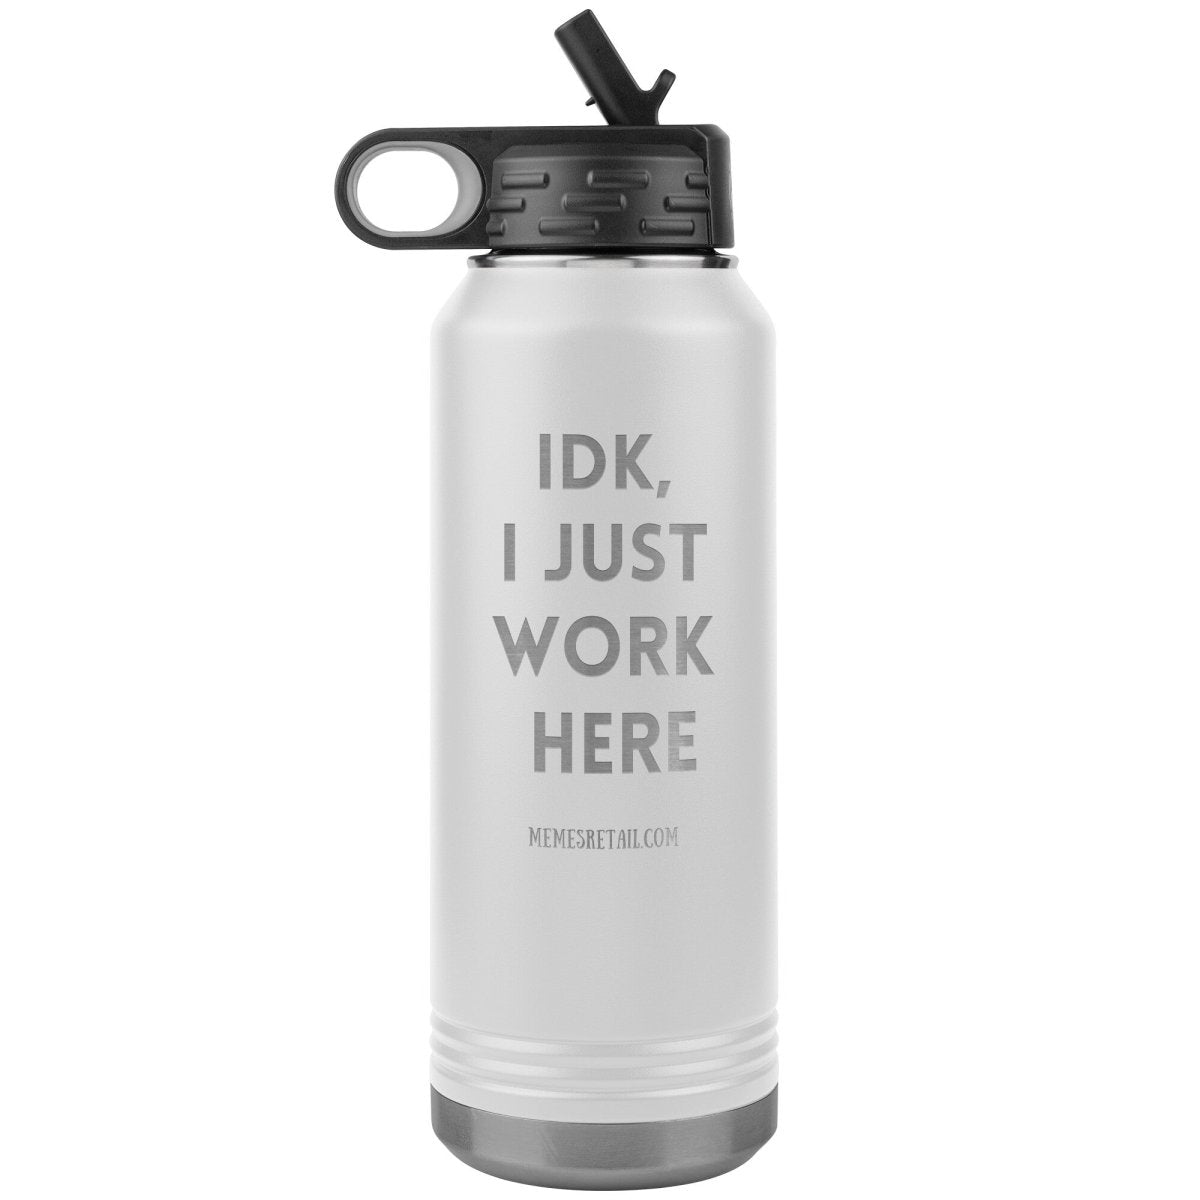 IDK, I Just Work Here 32 oz Stainless Steel Water Bottle Tumbler, White - MemesRetail.com